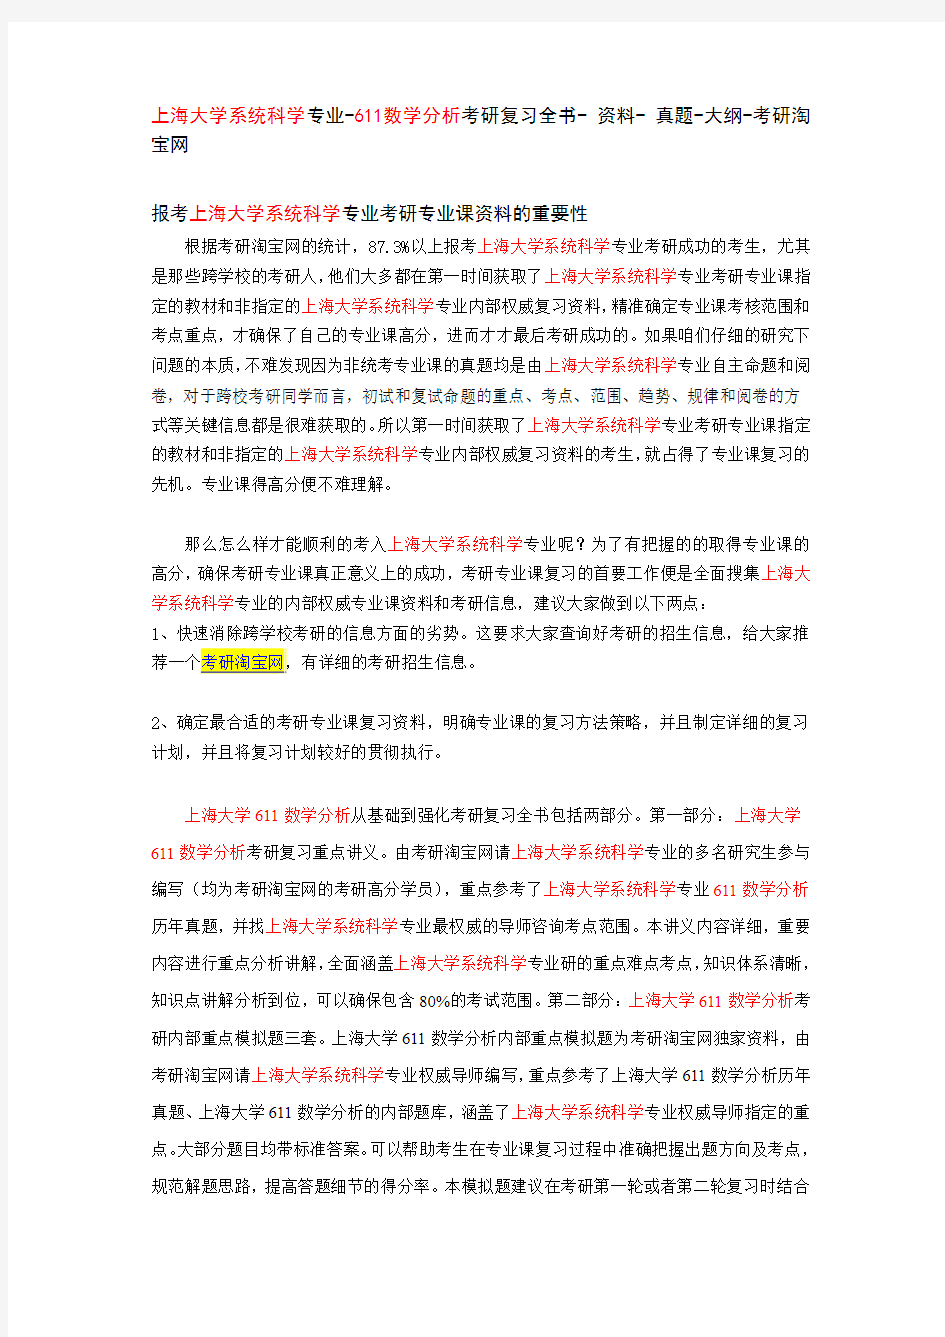 上海大学系统科学专业-611数学分析考研复习全书- 资料- 真题-大纲-考研淘宝网